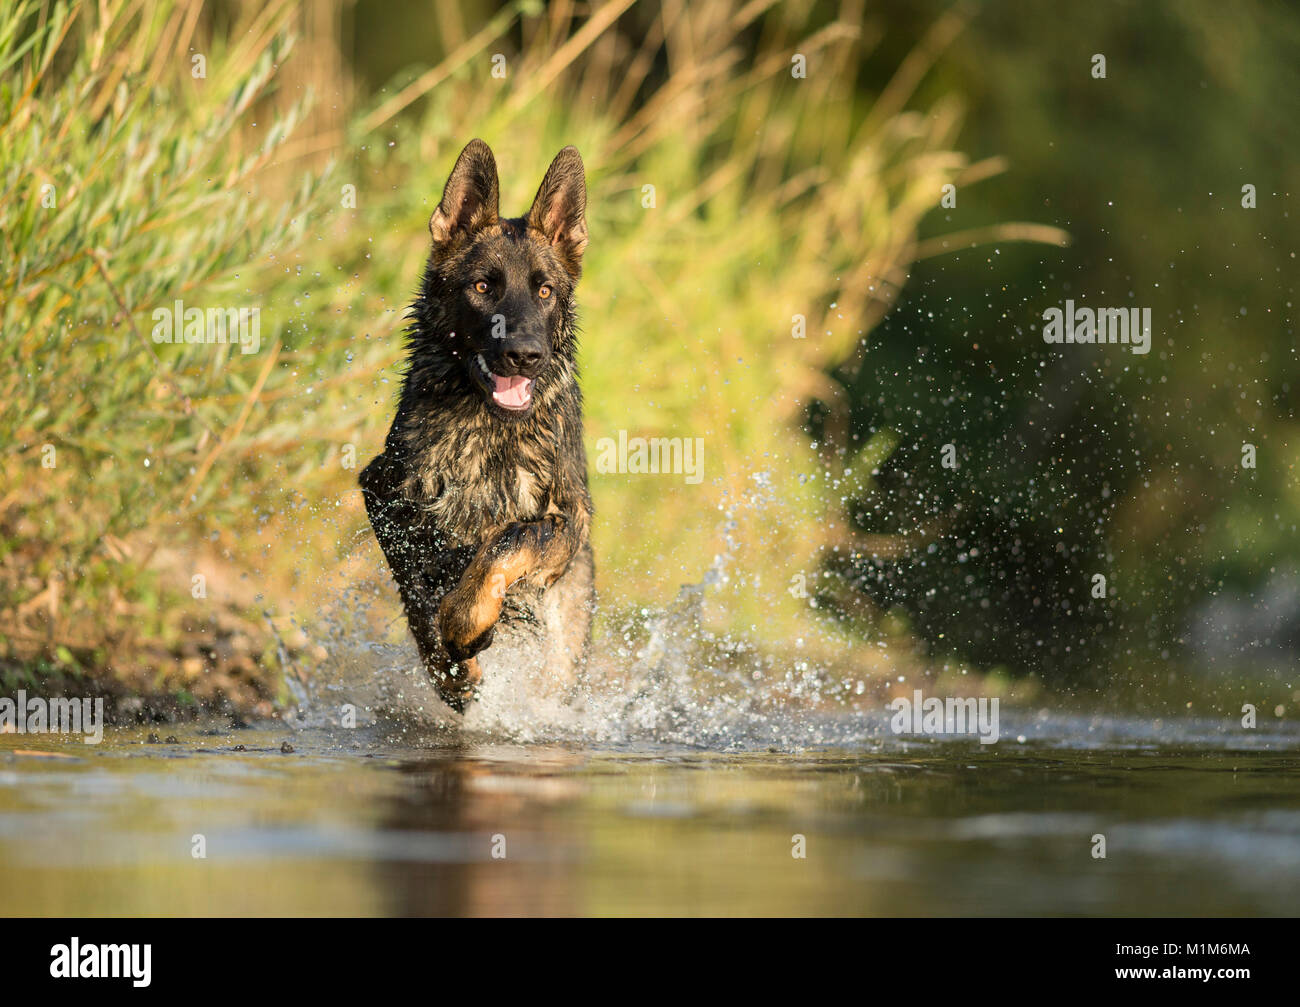 German Shepherd, Alsatian. Adult running in shallow water. Germany Stock Photo